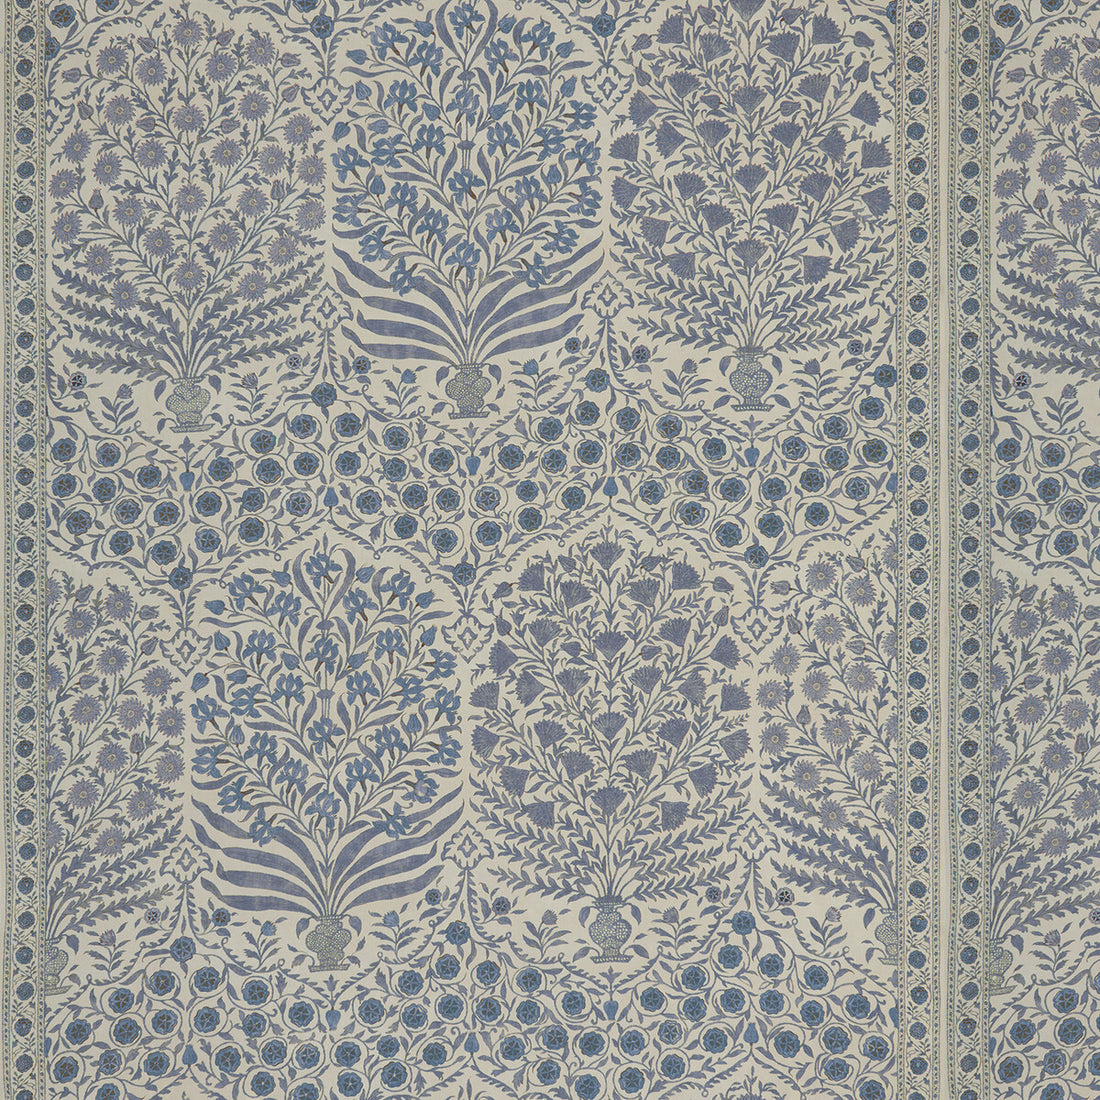 Sameera fabric in blue/indigo color - pattern 2017108.515.0 - by Lee Jofa in the Oscar De La Renta III collection